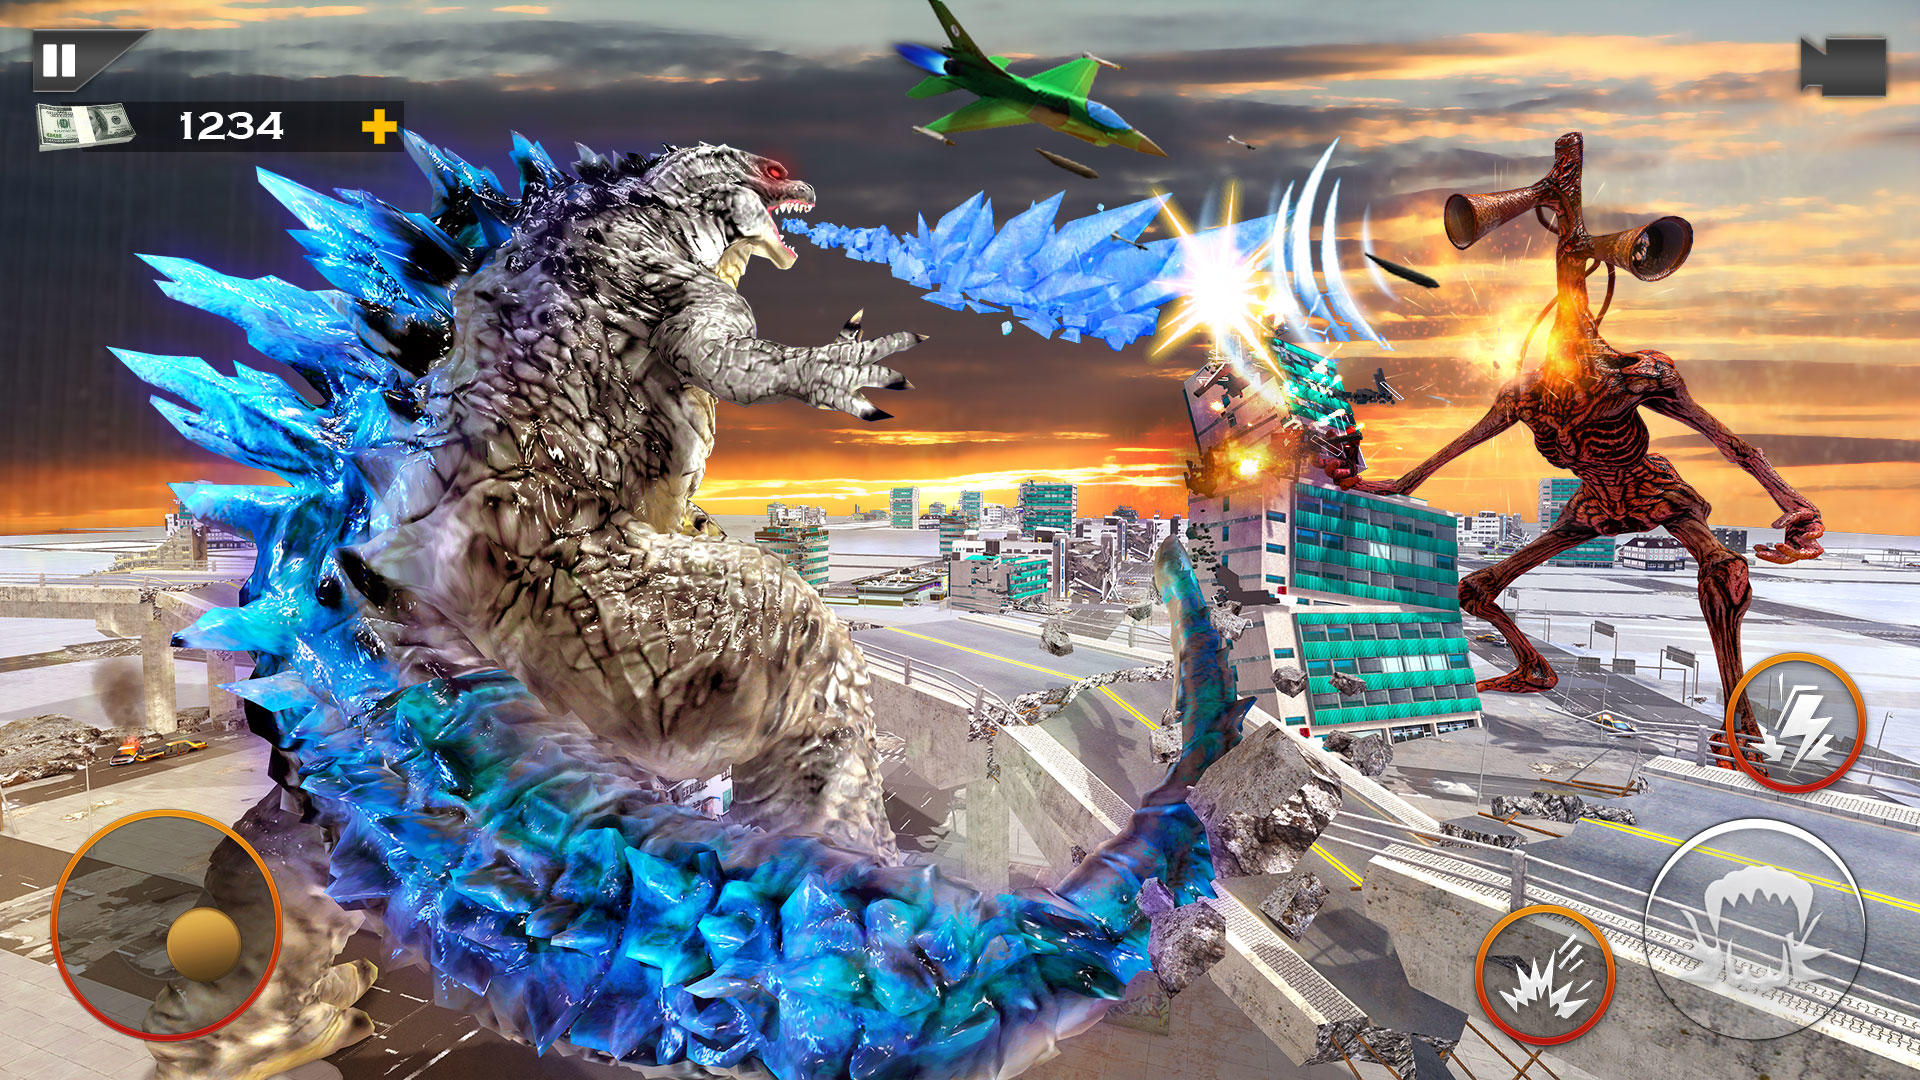 Godzilla vs siren head who would win